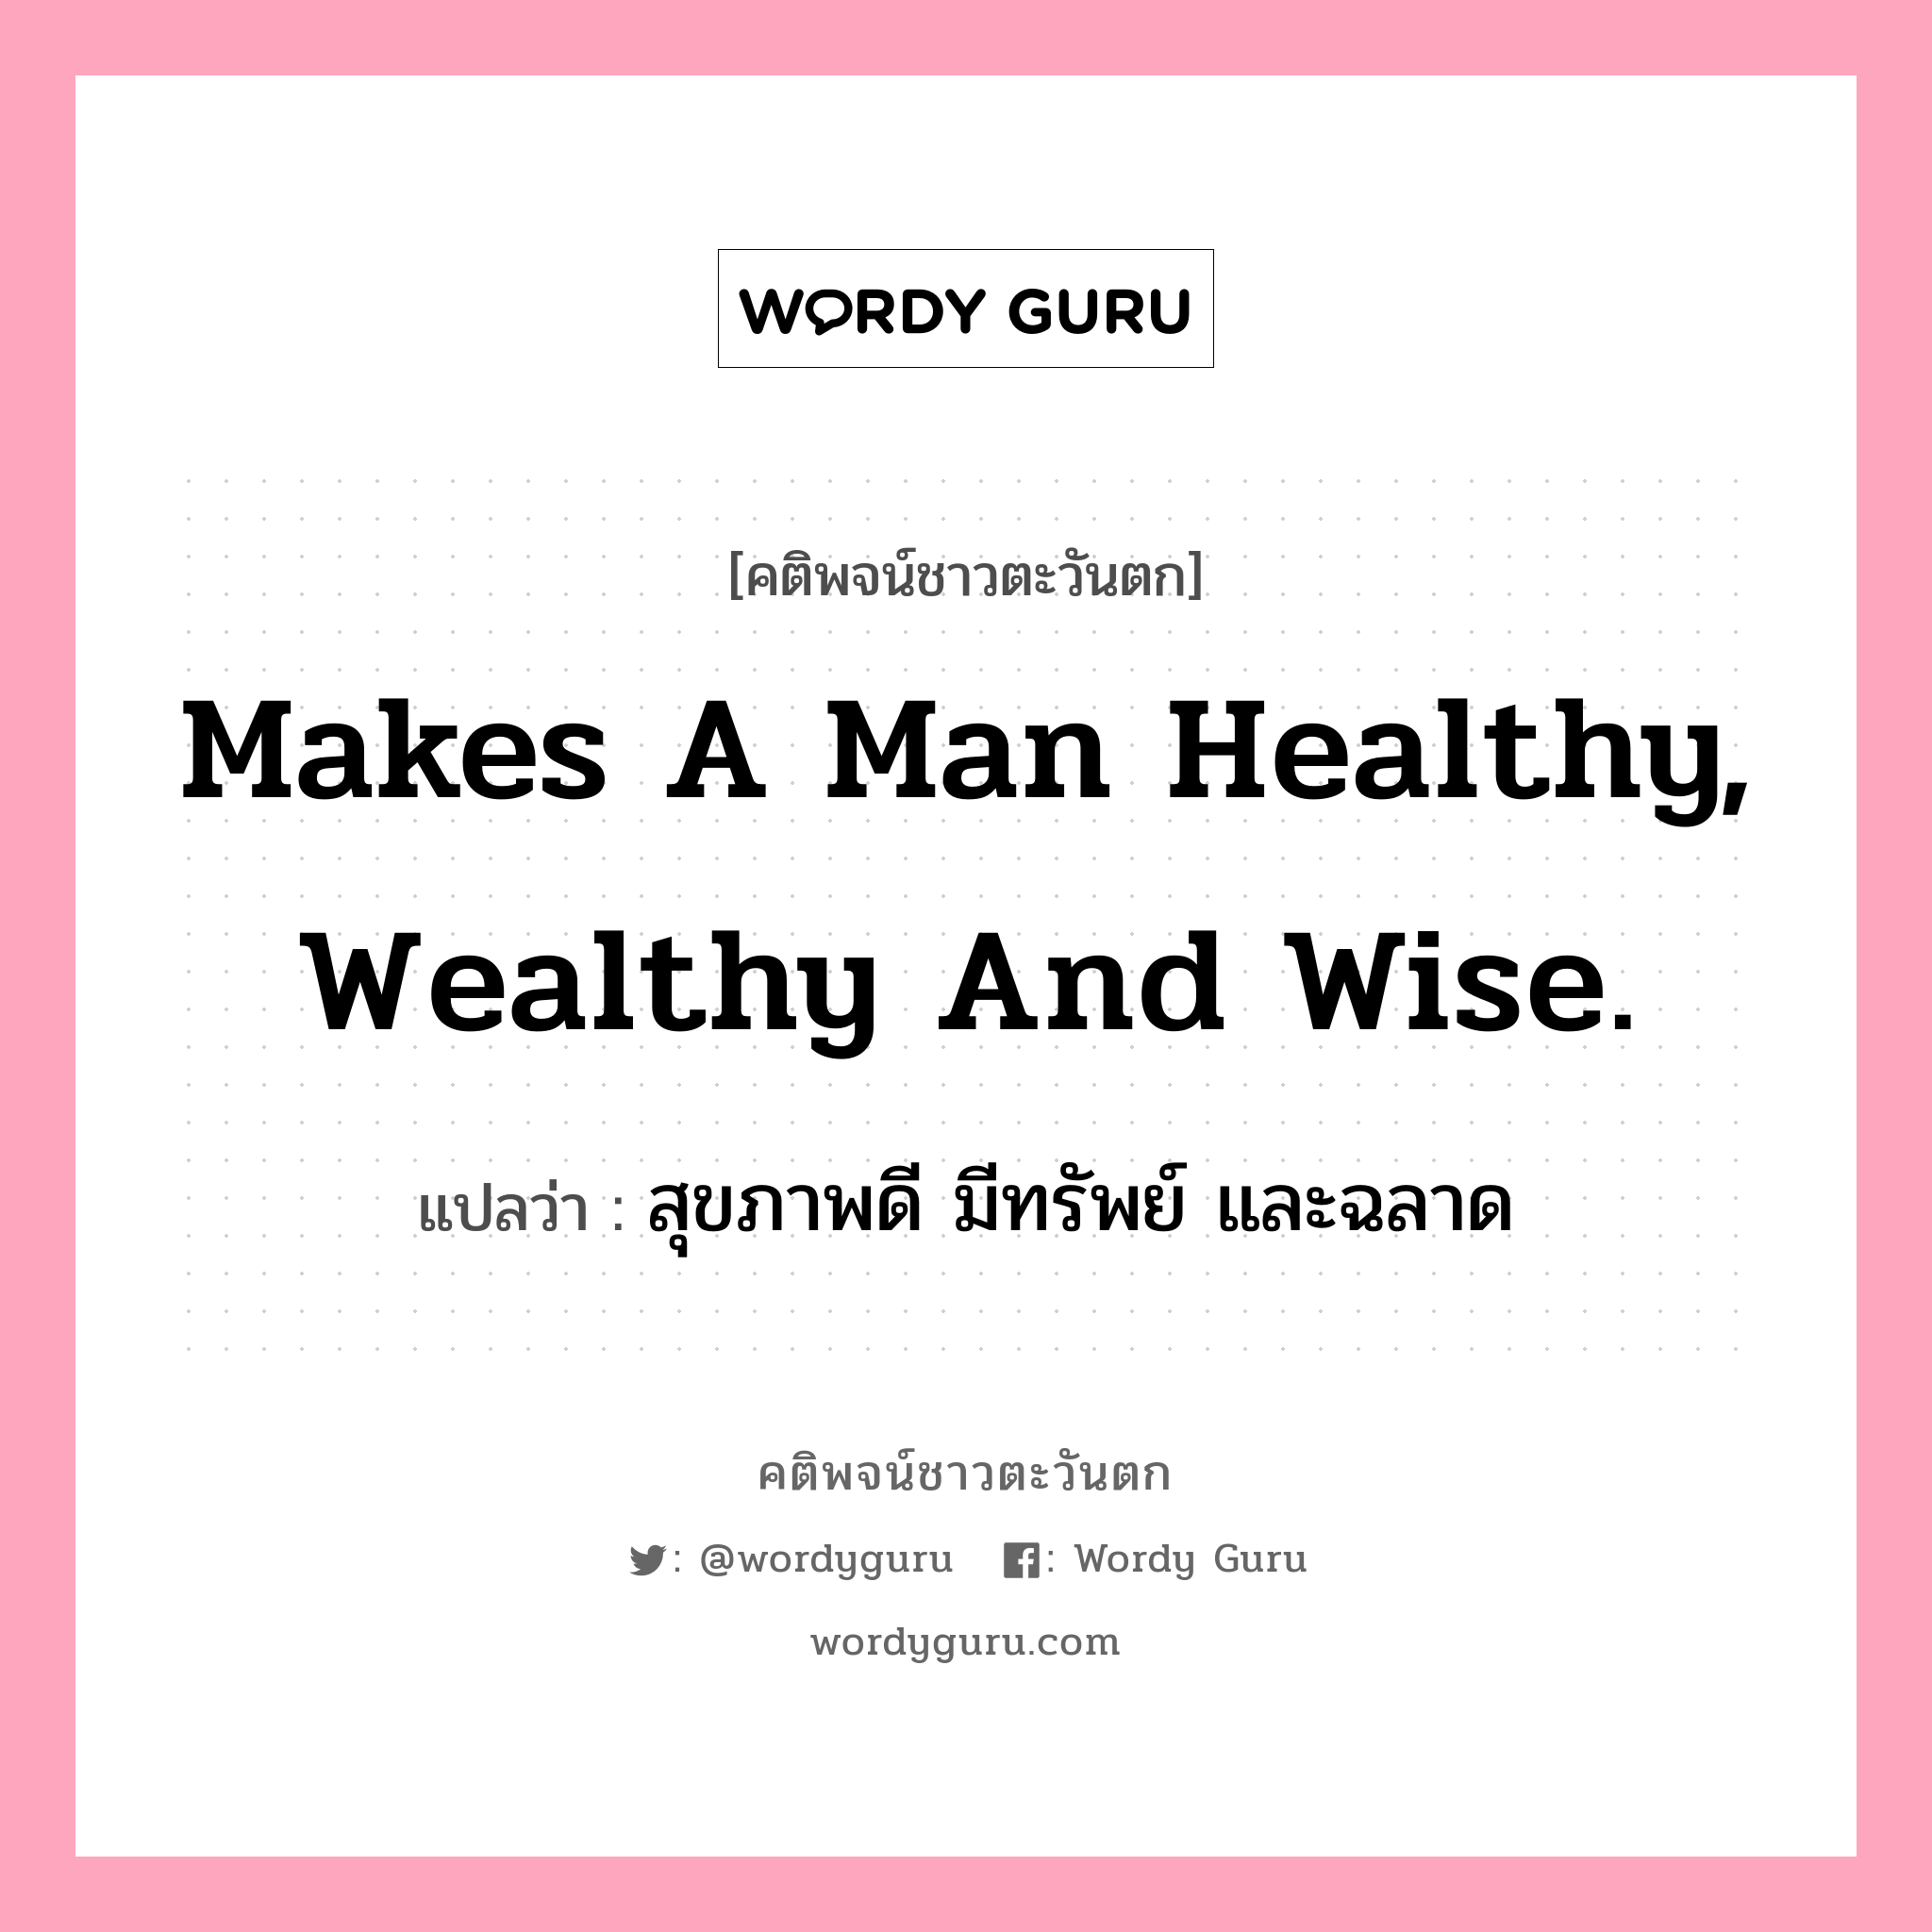 Makes a man healthy, wealthy and wise., คติพจน์ชาวตะวันตก Makes a man healthy, wealthy and wise. แปลว่า สุขภาพดี มีทรัพย์ และฉลาด